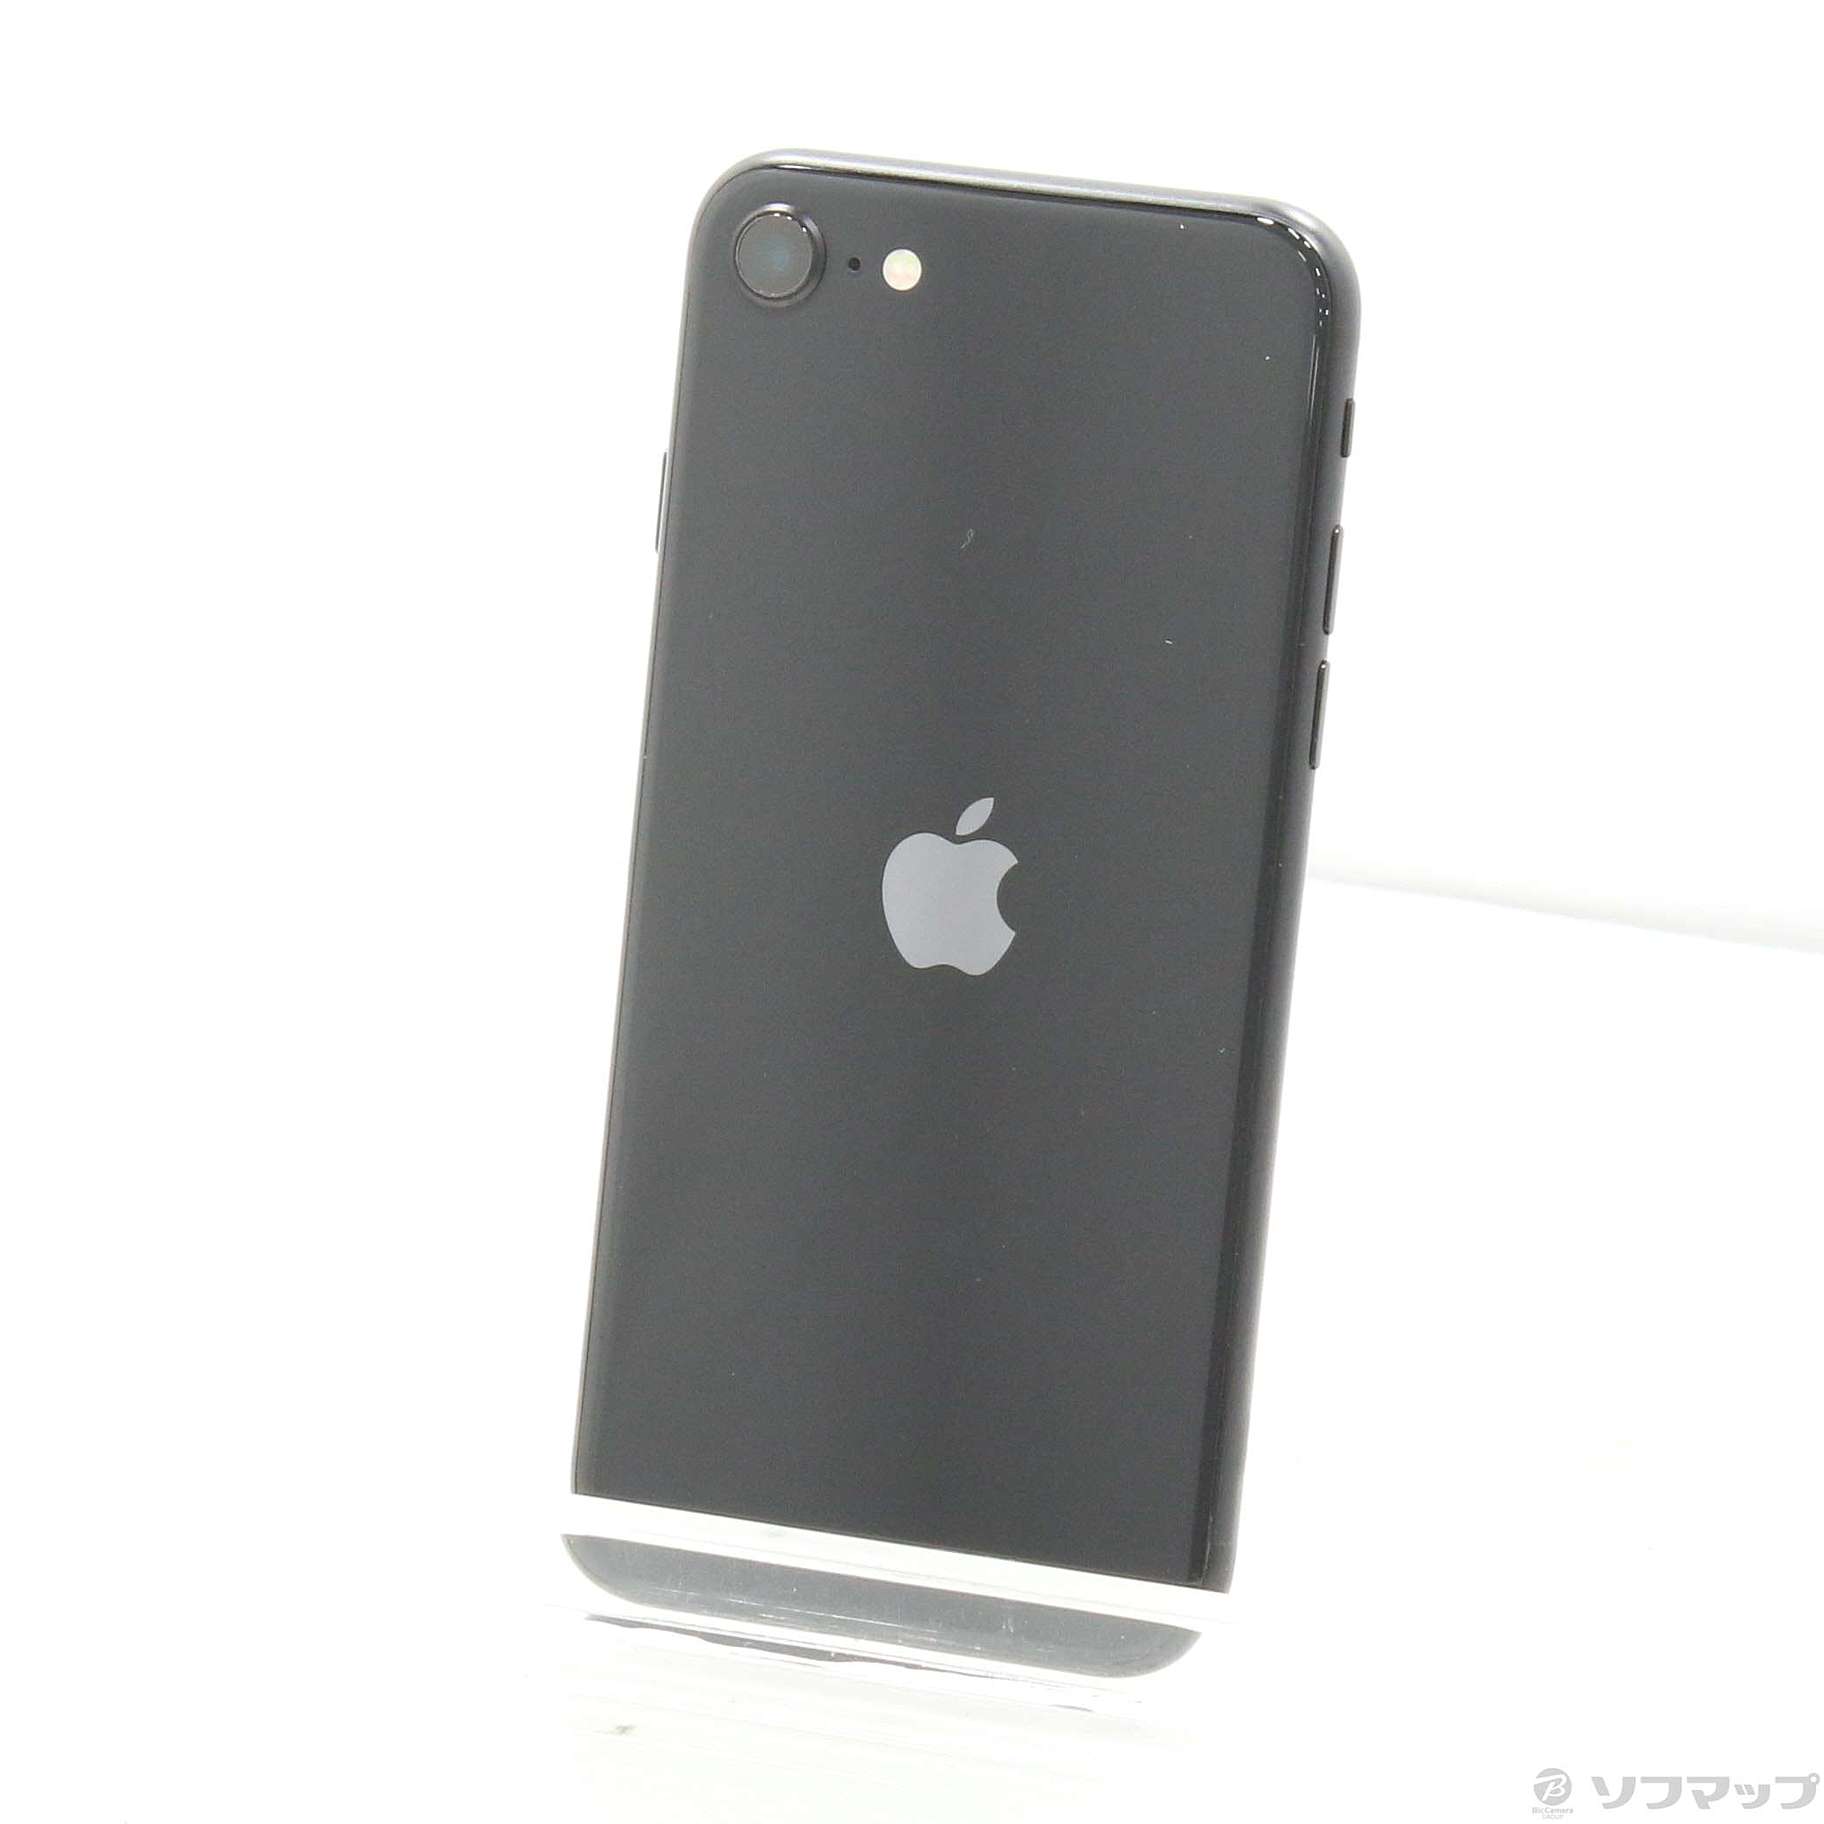 iPhonese black 64gb SIMフリースマートフォン/携帯電話